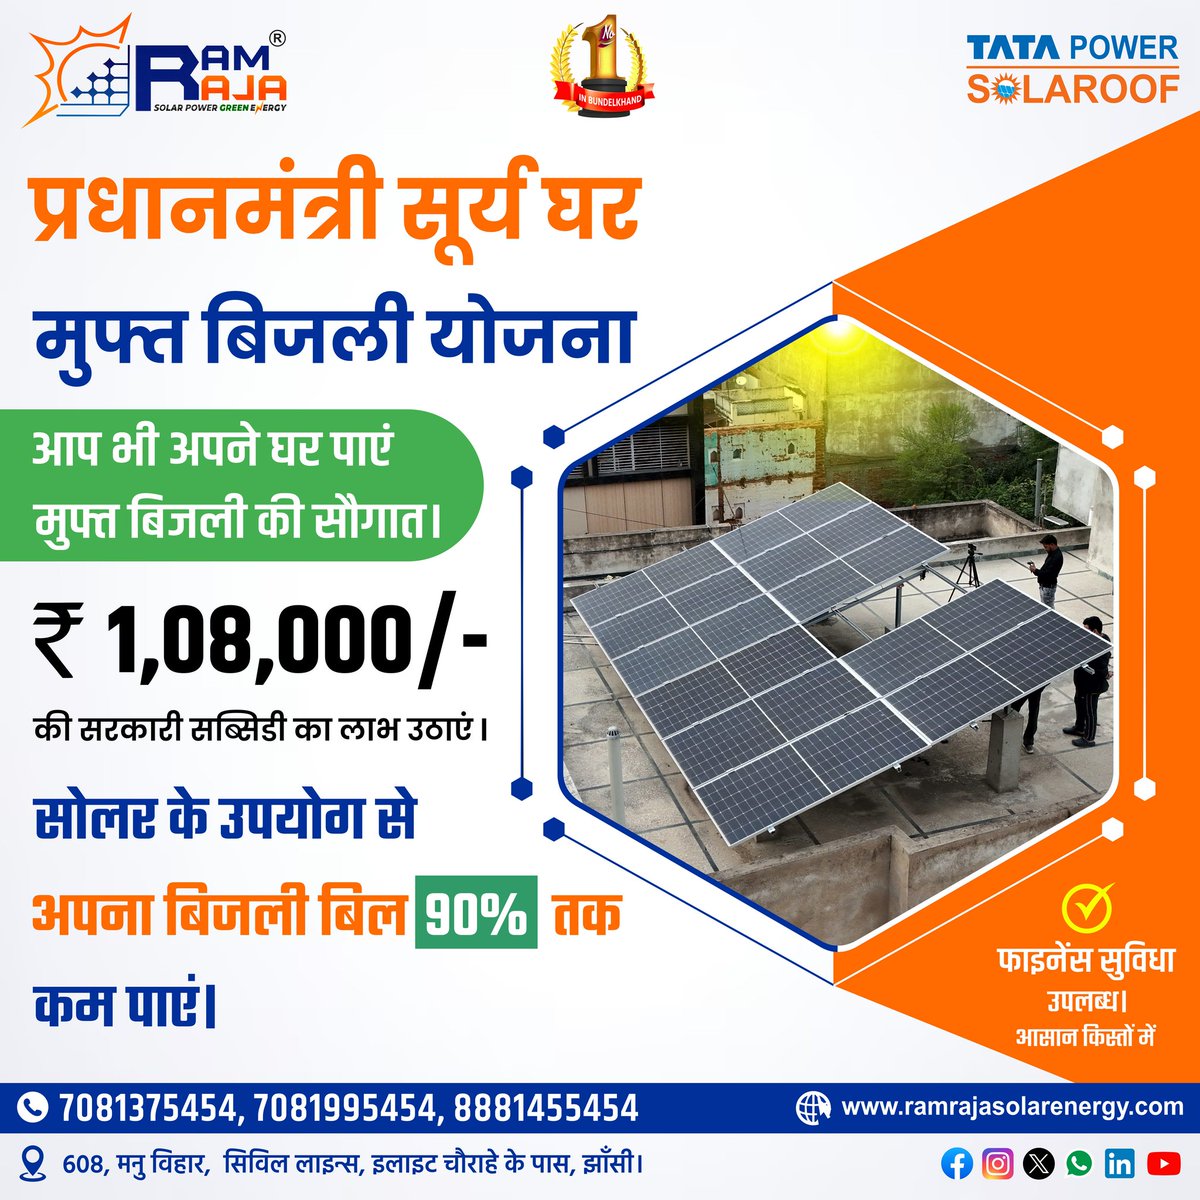 प्रधानमंत्री सूर्य घर मुफ्त बिजली योजना
आप भी अपने घर पाएं मुफ्त बिजली की सौगात।
1,08,000/- की सरकारी सब्सिडी का लाभ उठाएं।
फाइनेंस सुविधा उपलब्ध।
केवल बिजली बिल के बराबर मासिक किस्त (सिर्फ 2 से 5 साल तक) और फिर 20 साल मुफ्त की बिजली।
राम राजा सोलर पावर ग्रीन एनर्जी
7880825454